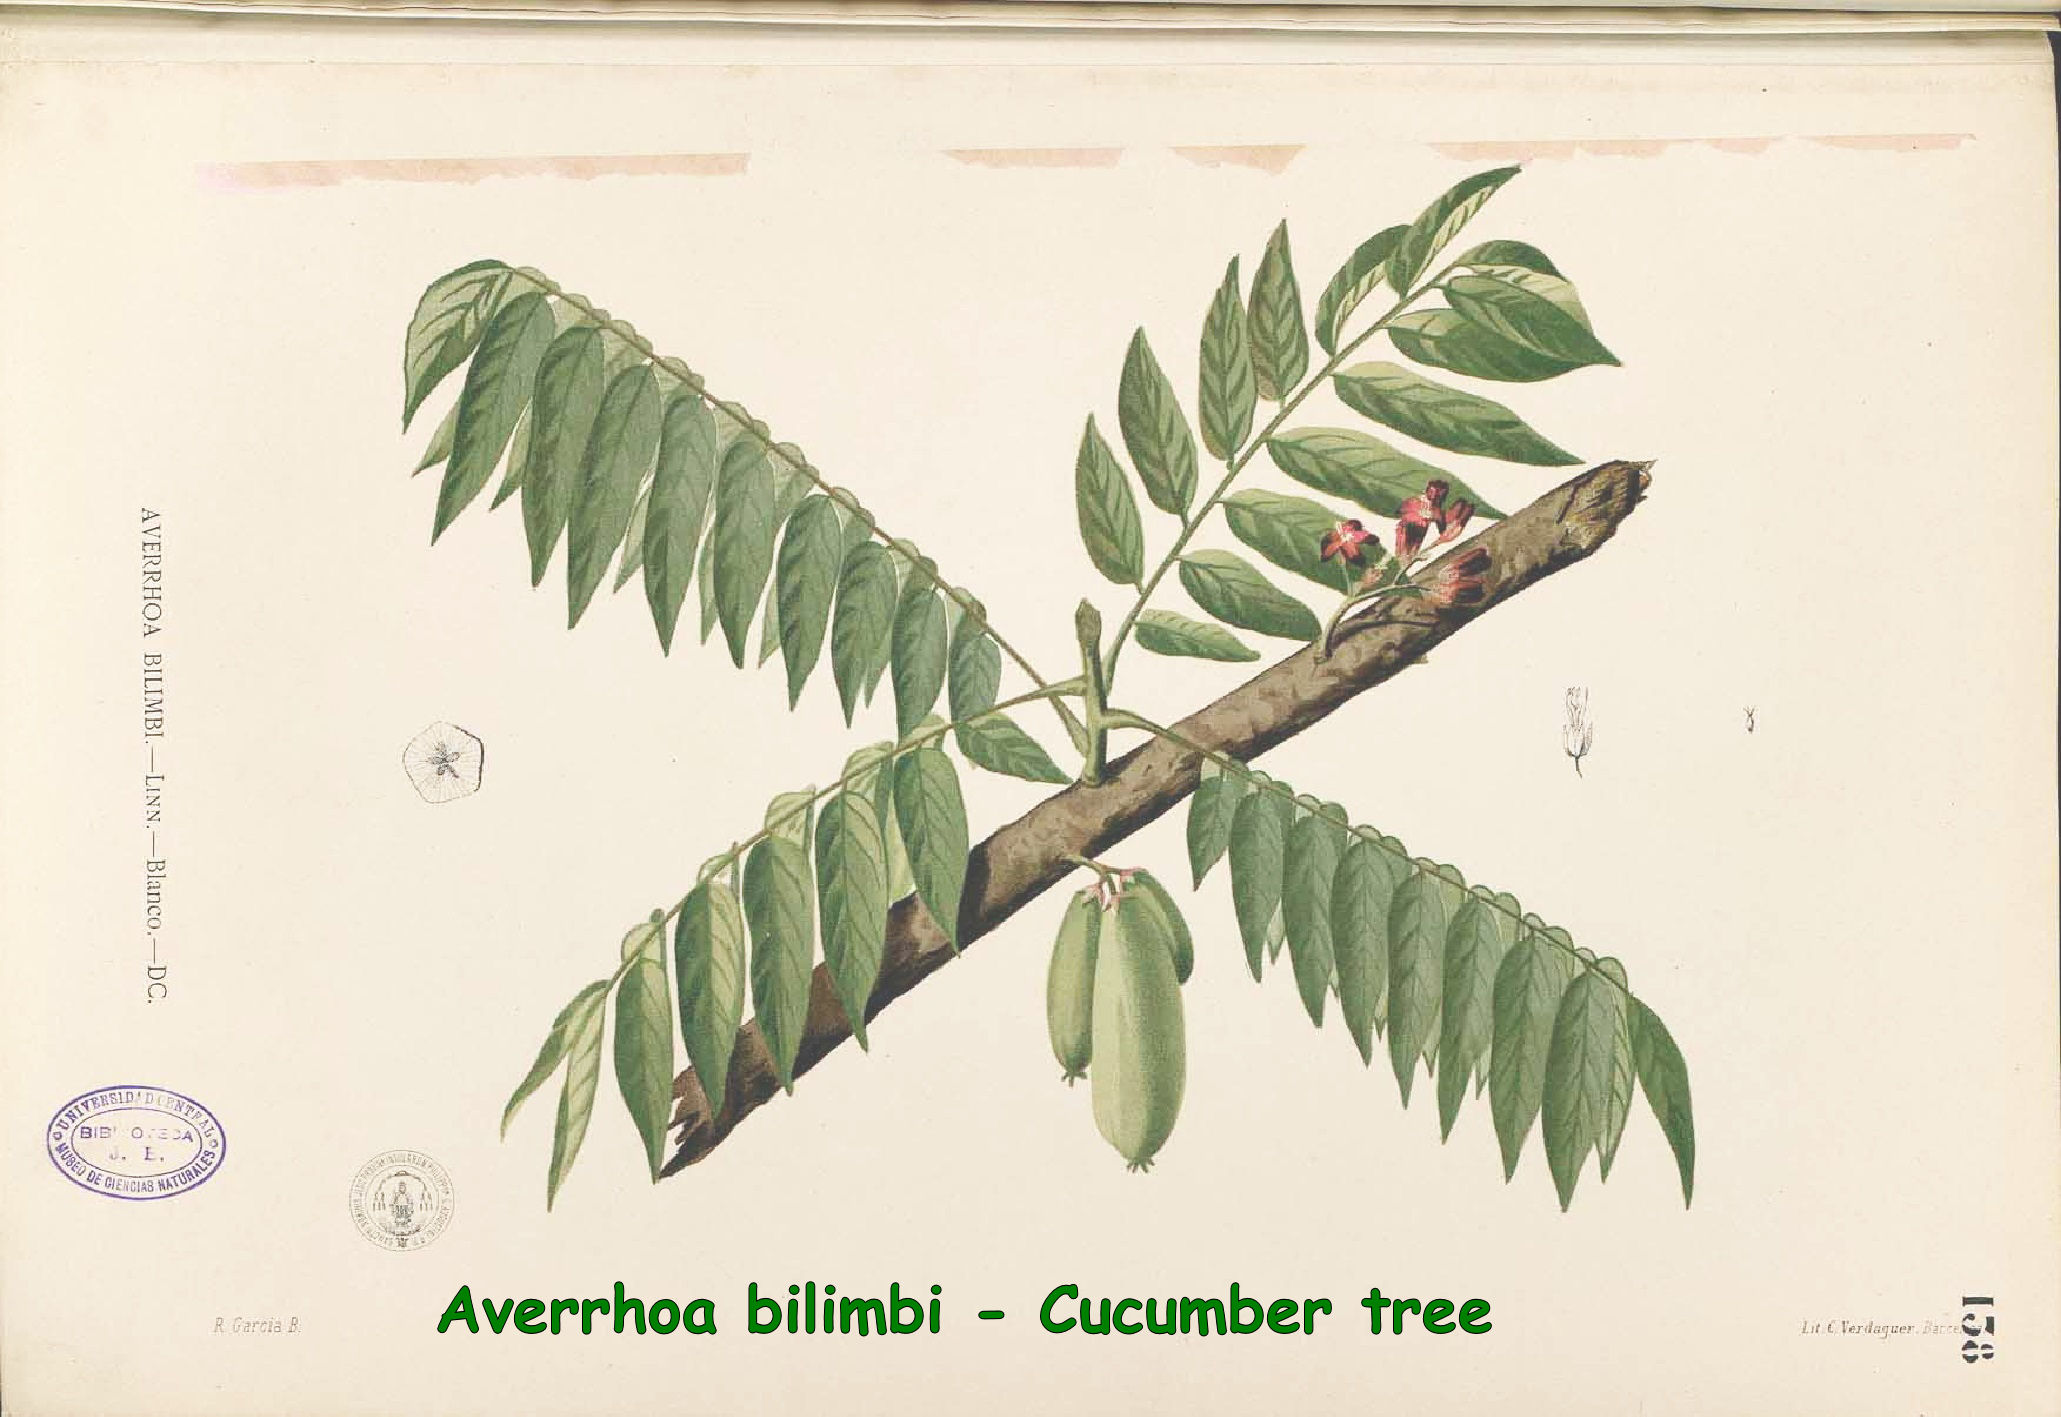 Averrhoa bilimbi - Cucumber tree